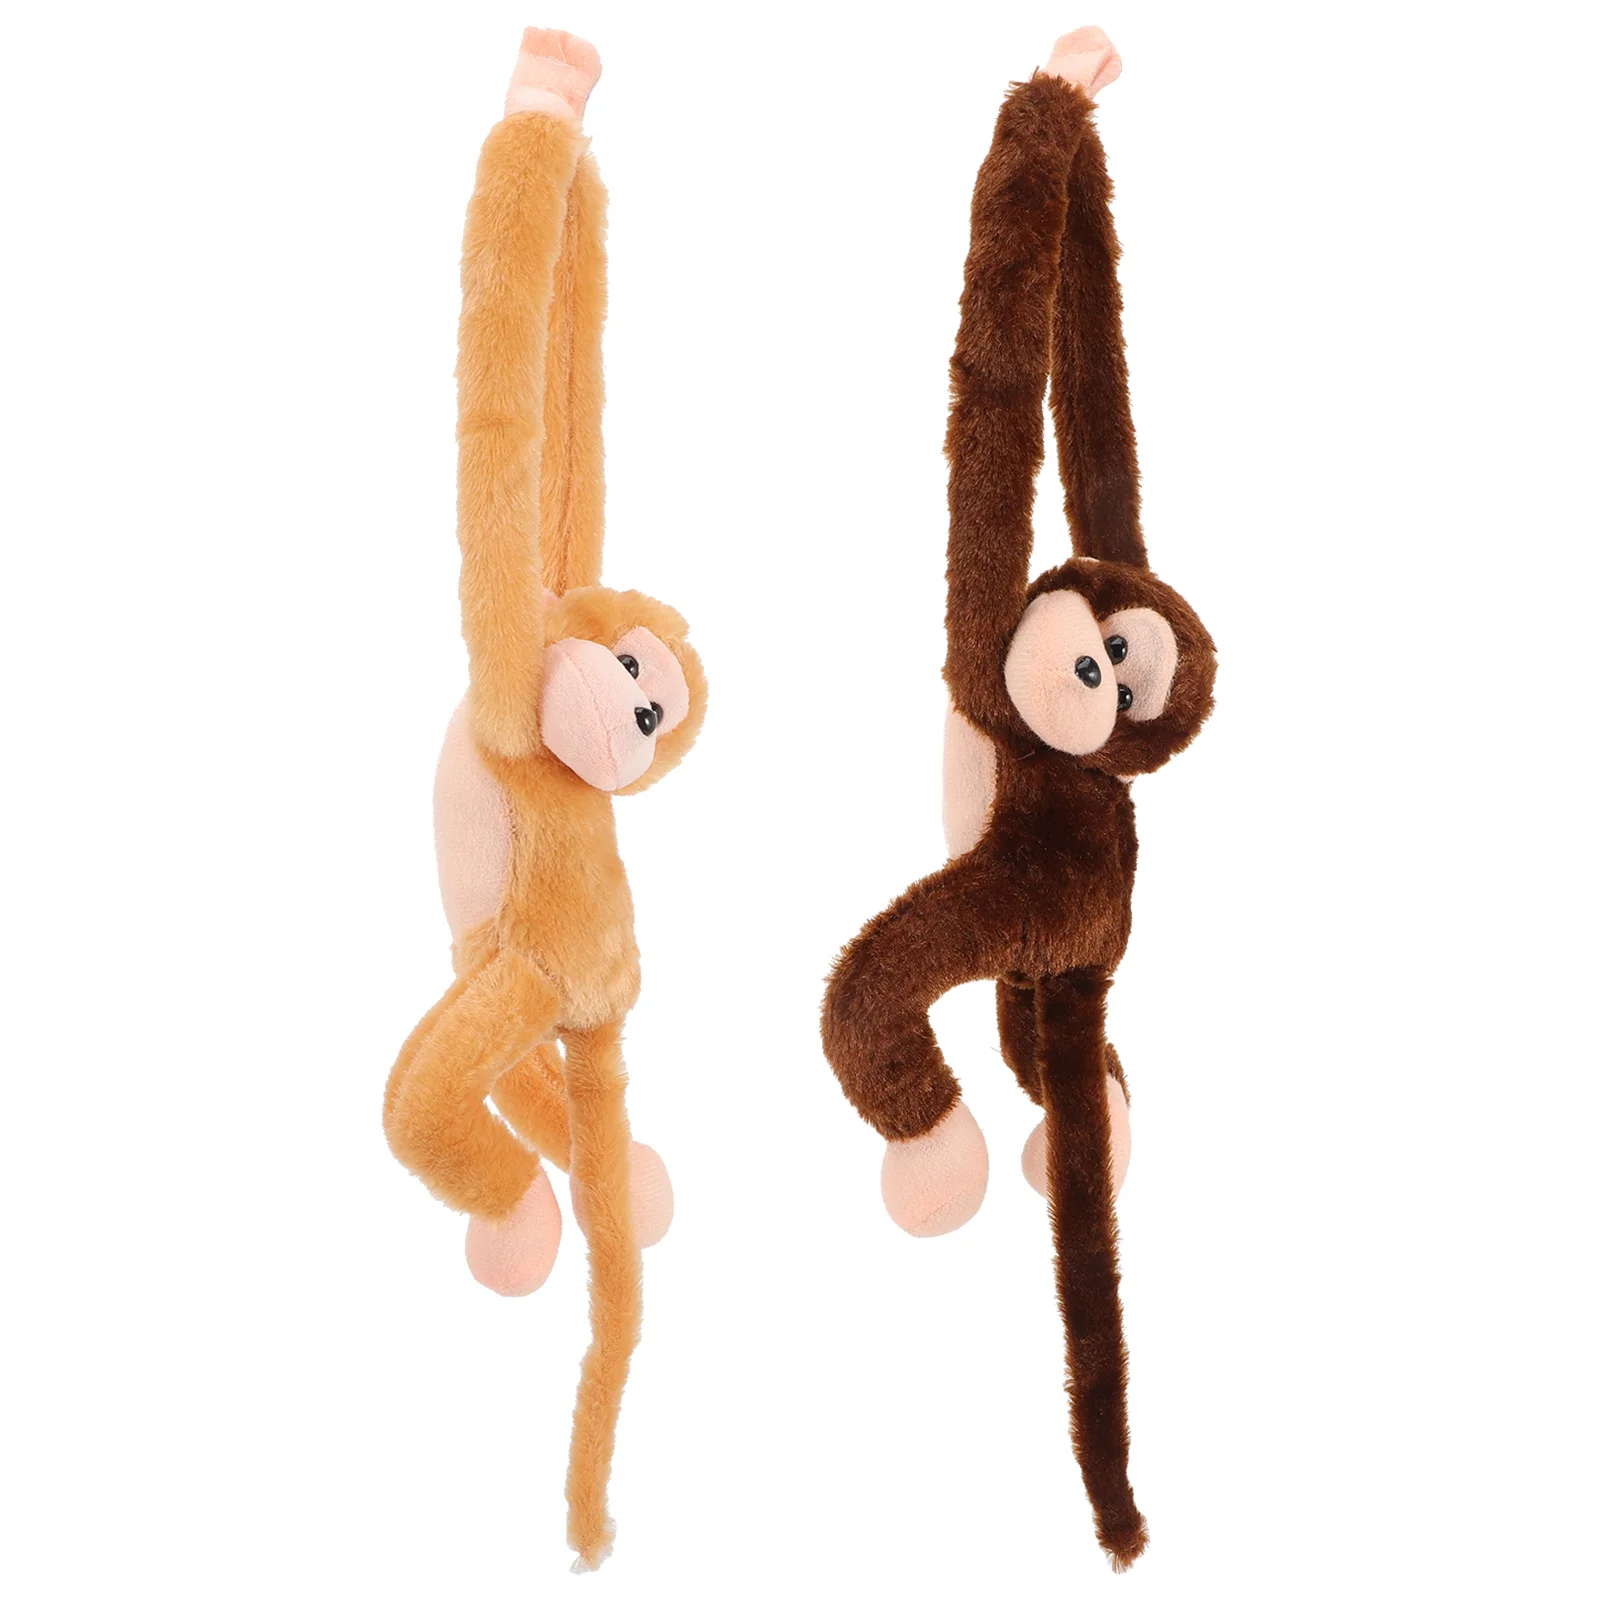 

2 шт., плюшевые игрушки в виде обезьяны